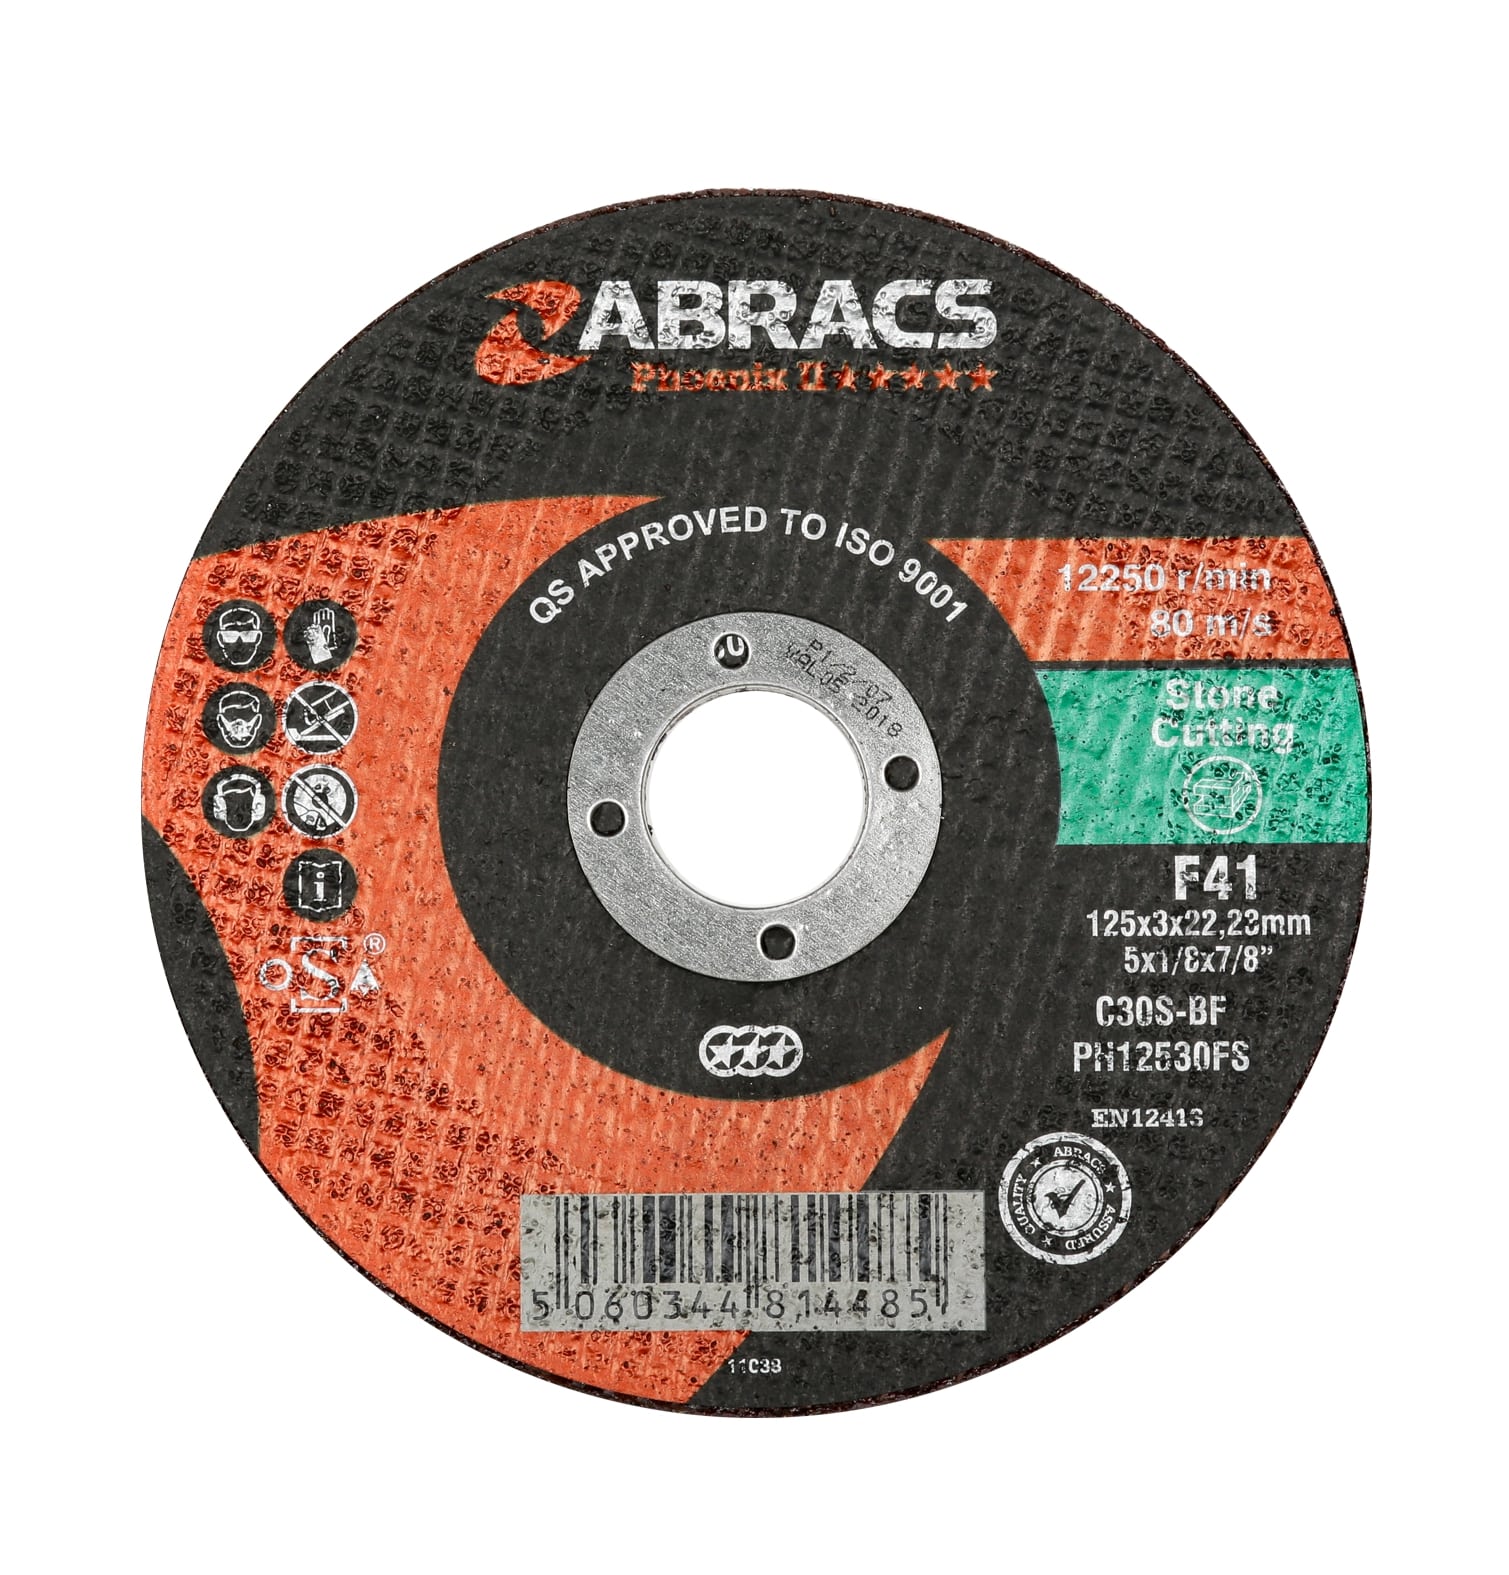 Abracs  PHOENIX II 125mm x 3mm x 22mm FLAT STONE Cutting Disc